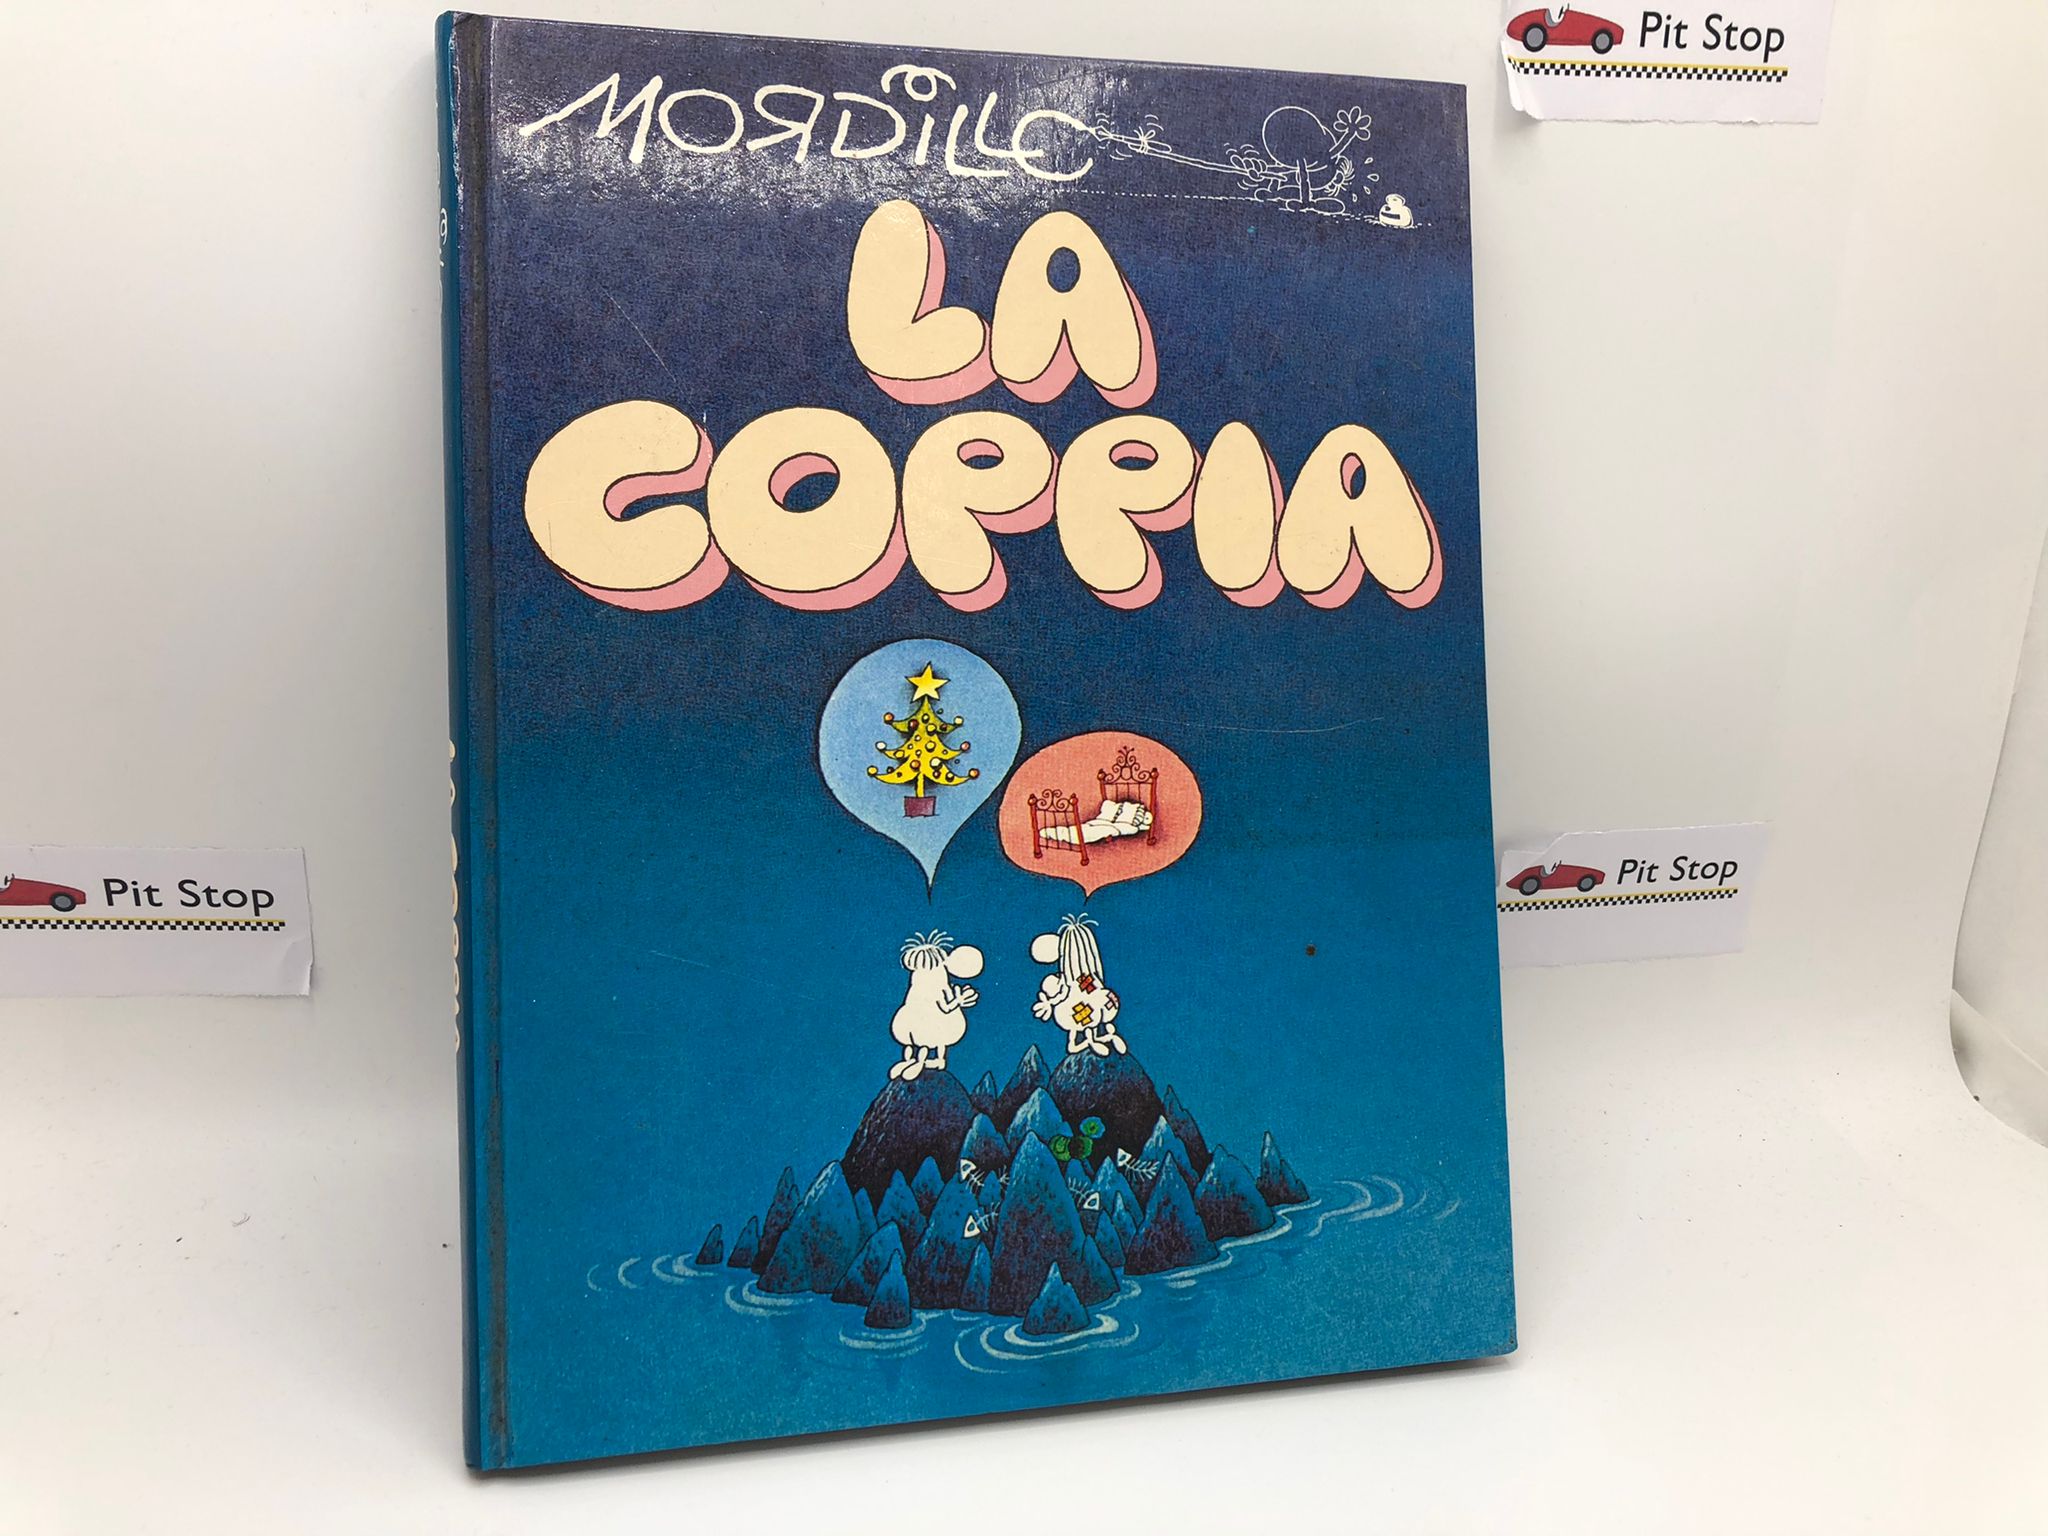 La Coppia by Mordillo